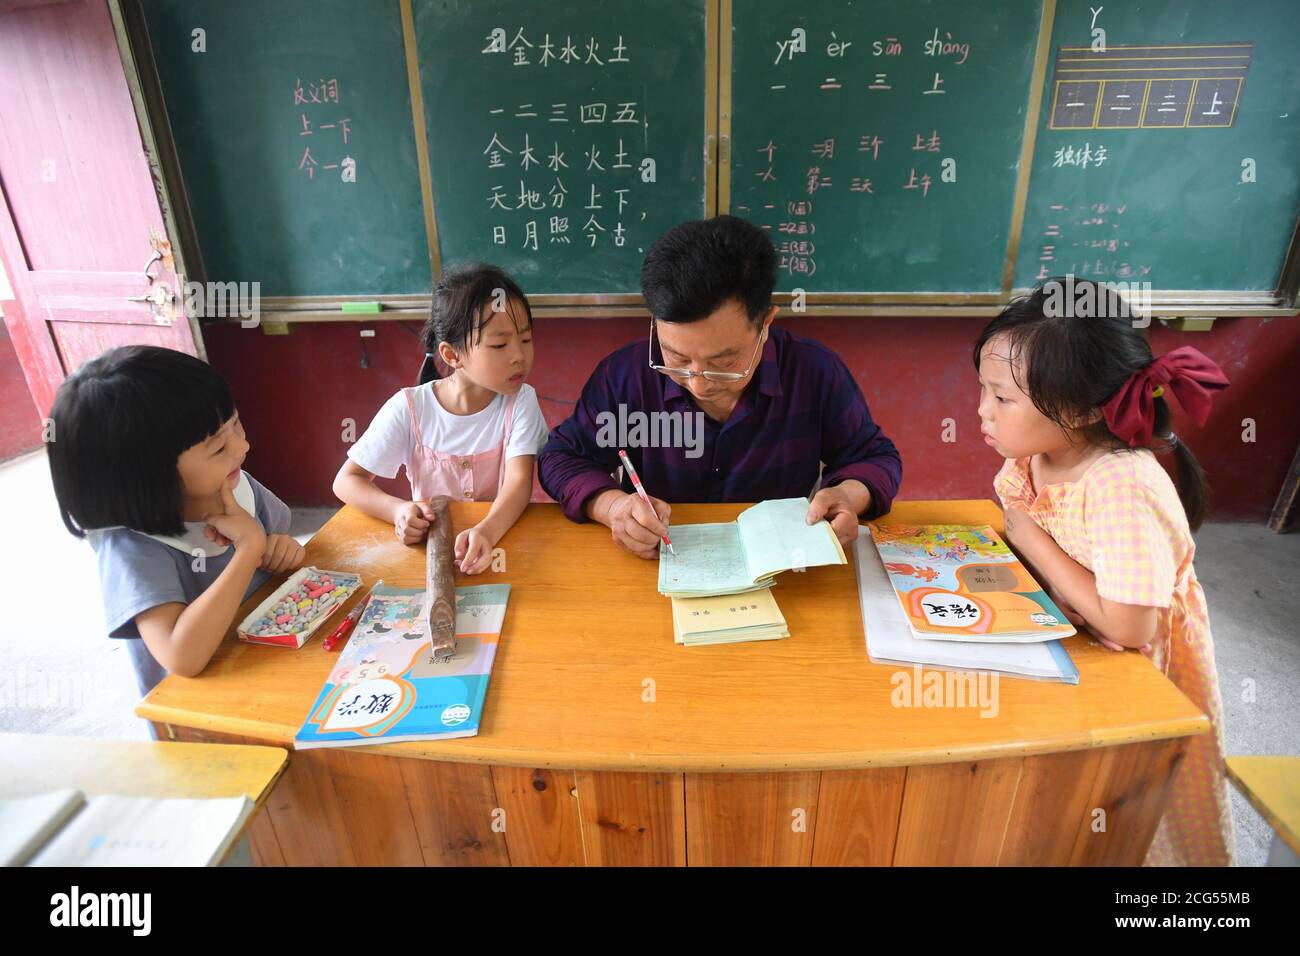 (200909) -- CHANGSHA, 9. September 2020 (Xinhua) -- Dong Zhuwen (2. R) markiert die Hausaufgaben seiner Schüler in einer chinesischen Klasse an der Chagan Grundschule in der Gemeinde Huju im Bezirk Chaling, Provinz Hunan in Zentralchina, 8. September 2020. Dong Zhuwen, 63, ist Lehrer für Schüler der ersten und zweiten Klasse an der Chagan Primary School. Geboren in Huju Township, begann Dong Zhuwen seine Lehrtätigkeit hier im Jahr 1977. Nach seiner Pensionierung im Jahr 2017, entschied er sich für den Aufenthalt in der Schule und weiterhin Unterricht, da die Schule war in Mangel an Lehrern. "Ich mag Kinder, ich möchte für sie bleiben", sagte Dong. Er hofft auch, dass mehr Stockfoto